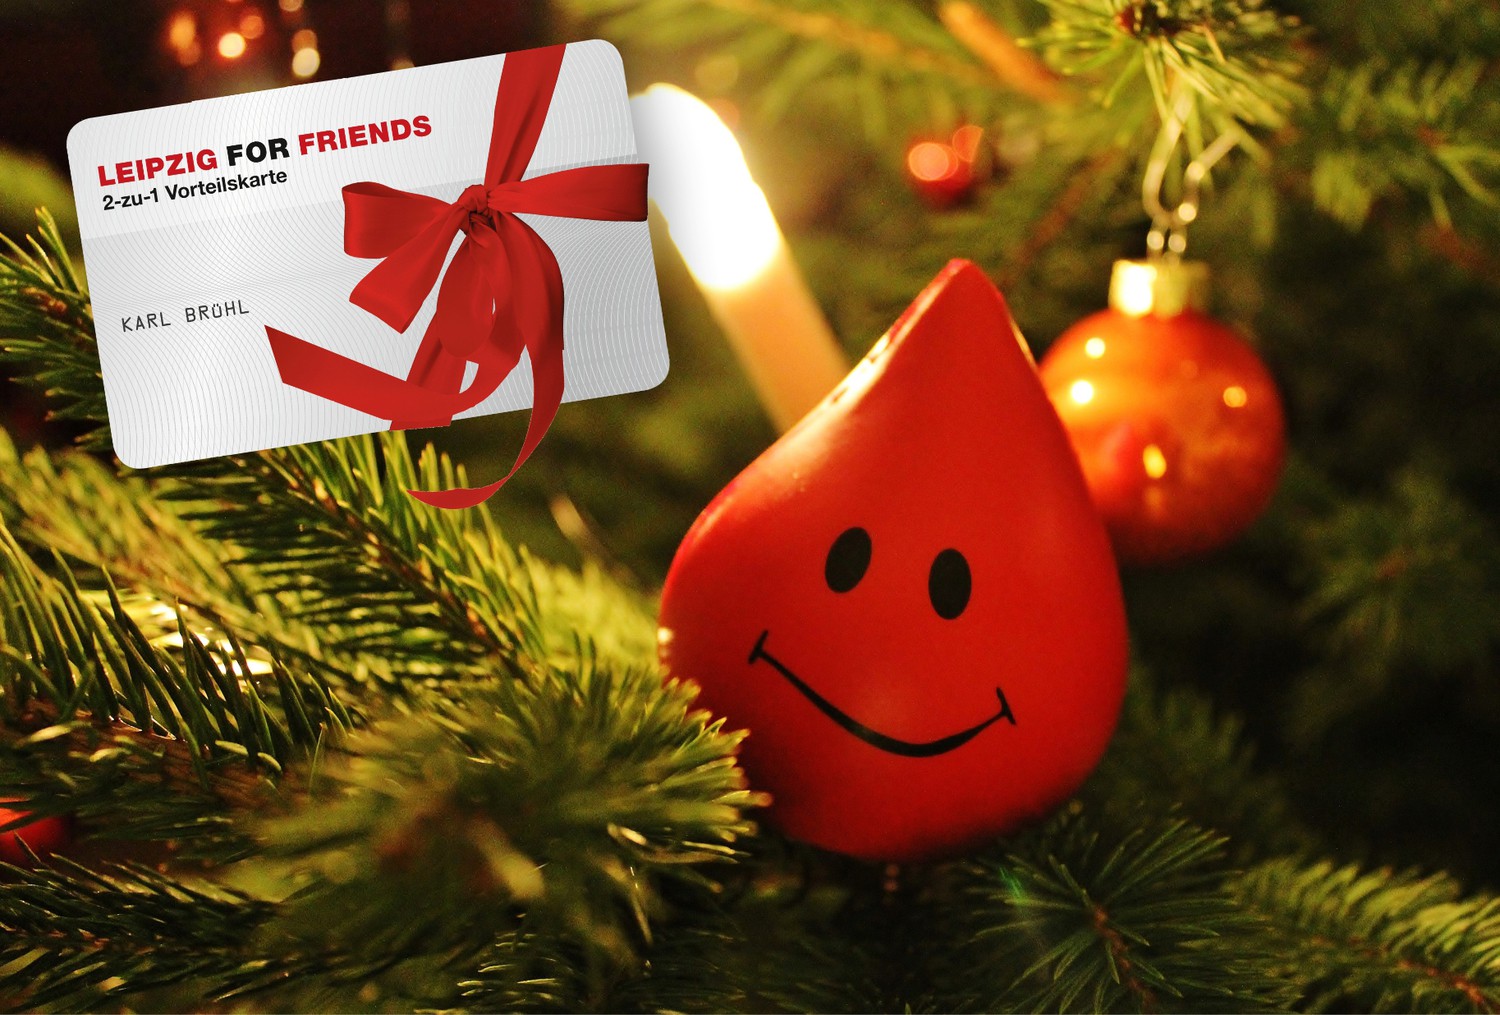 Die UKL-Blutbank bedankt sich bei allen Blutspendern im Dezember mit einer LEIPZIG FOR FRIENDS-2 zu 1 Vorteilskarte.